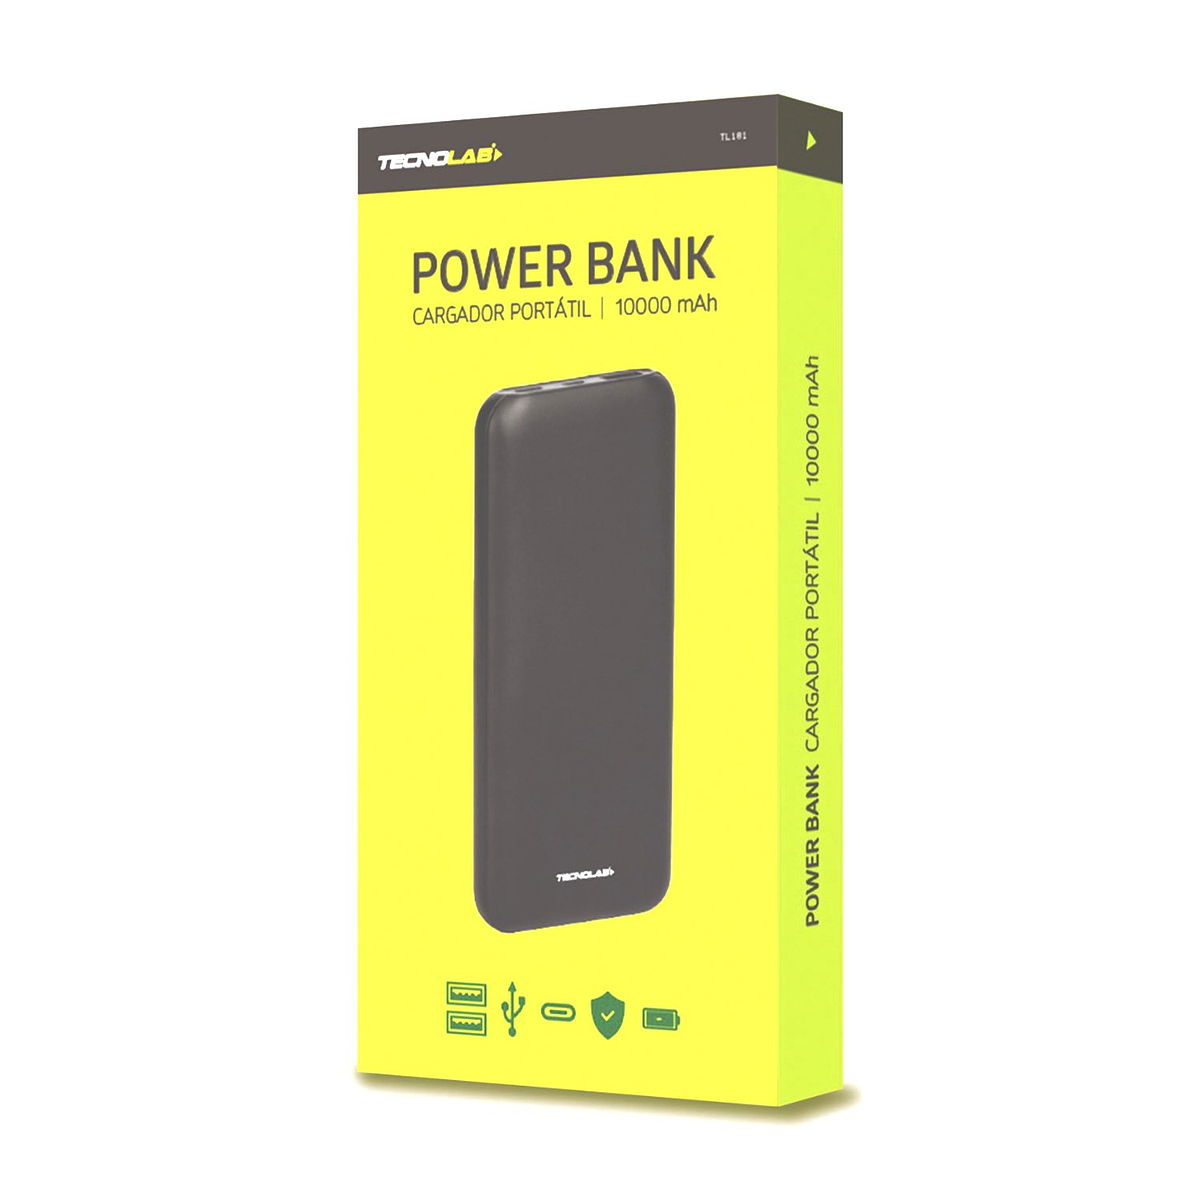 Power Bank Cargador Portátil 10.000 Mah Recargable